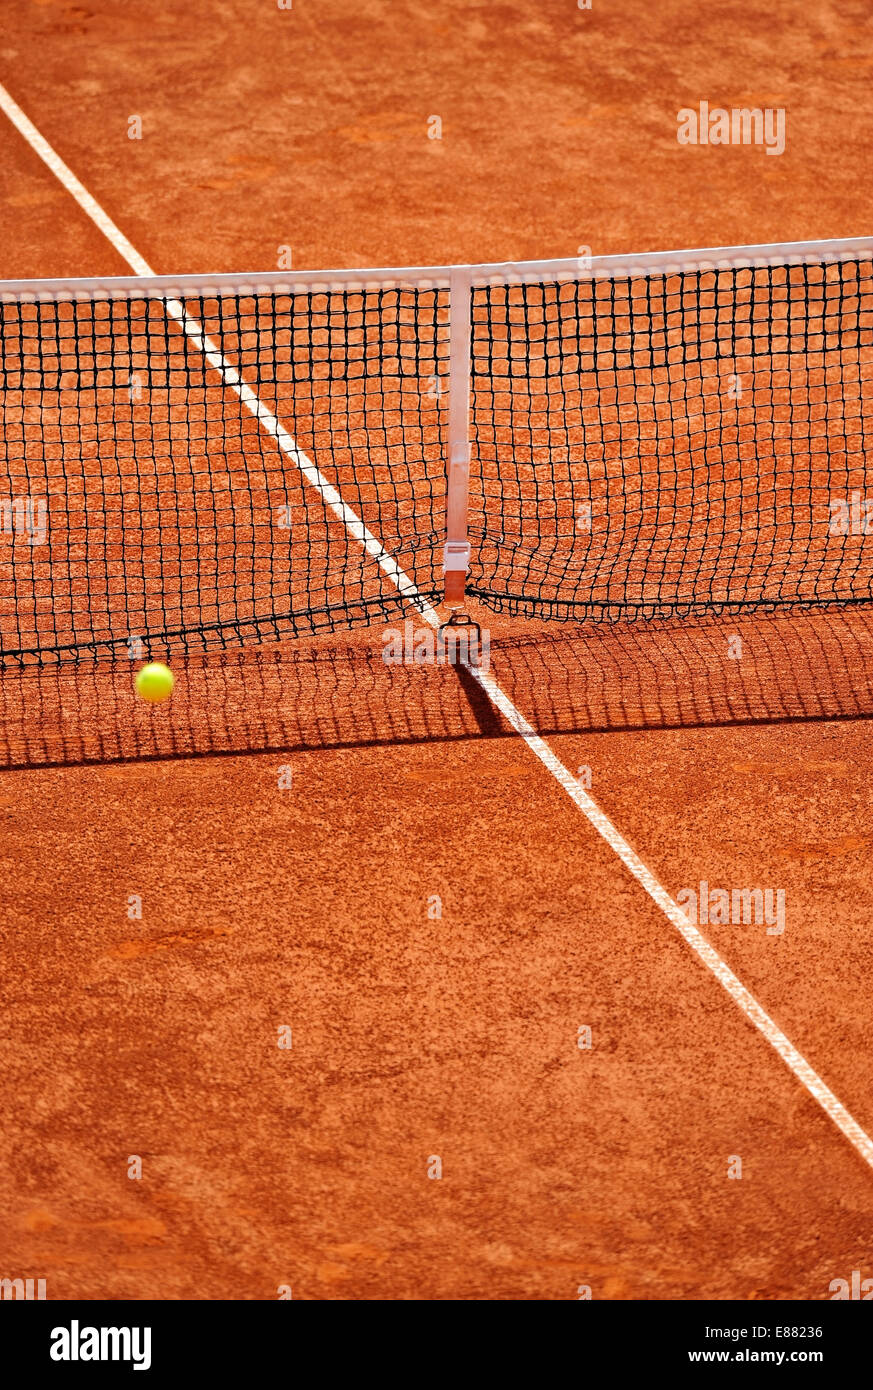 Detalle neta de tenis sobre tierra batida durante un partido Foto de stock